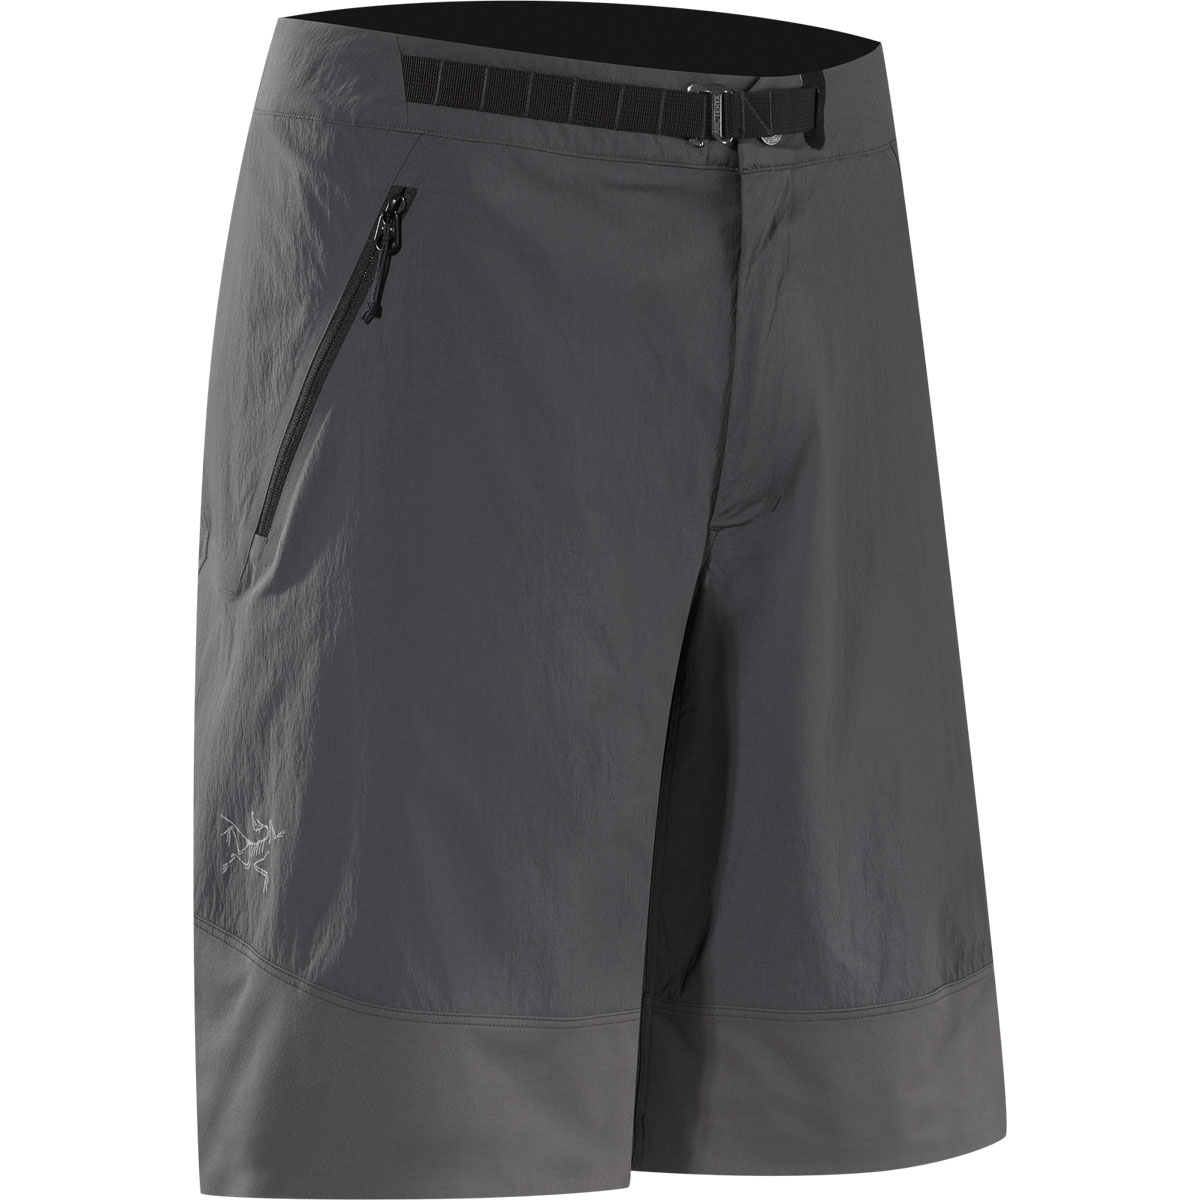 Gamma SL Hybrid Short, men's, discontinued colors